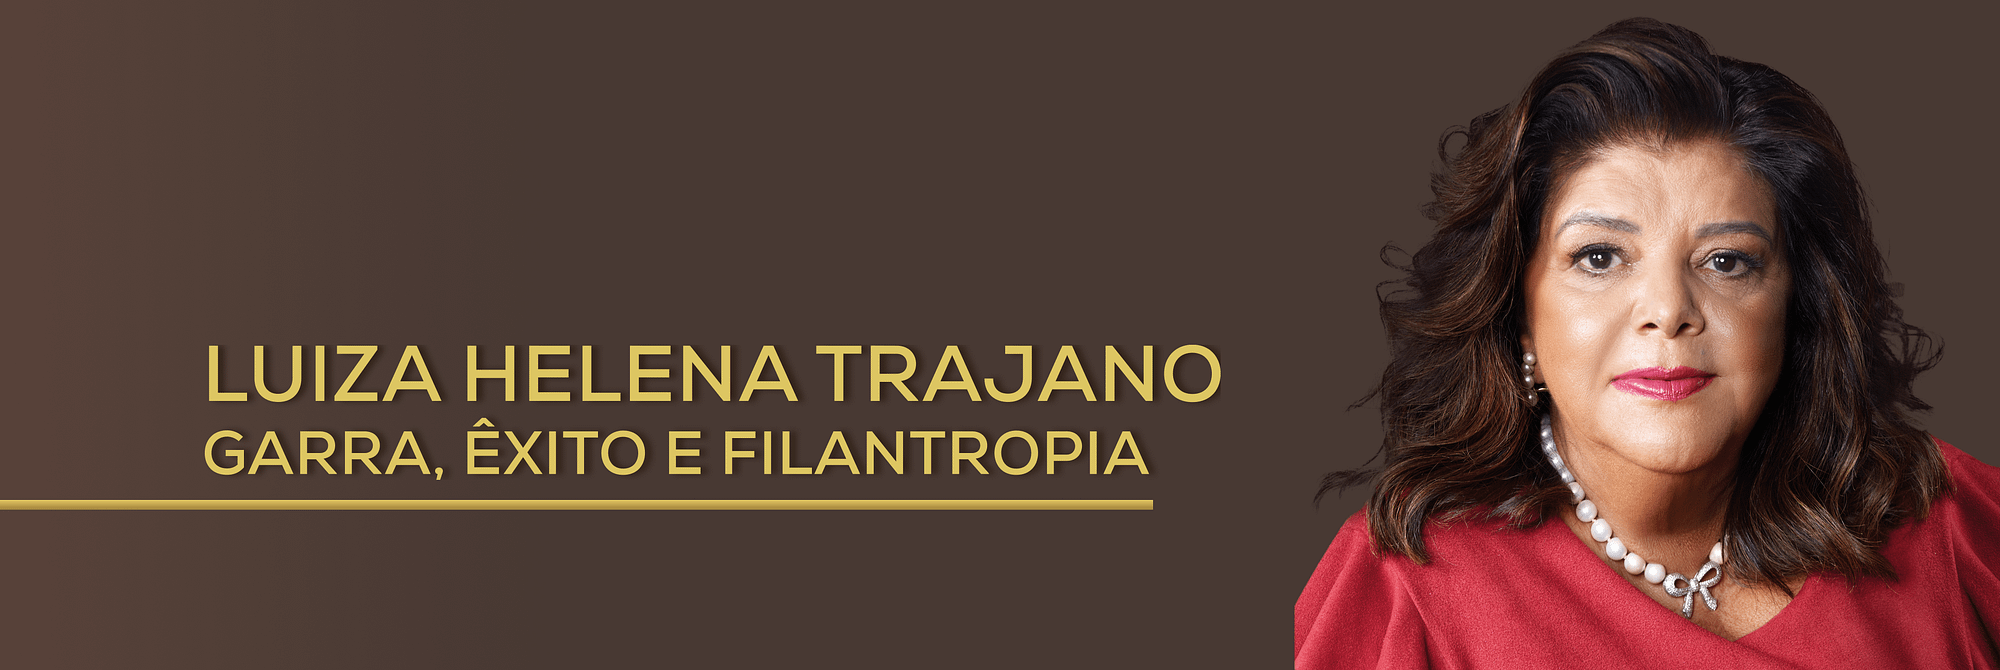 Luiza Helena Trajano